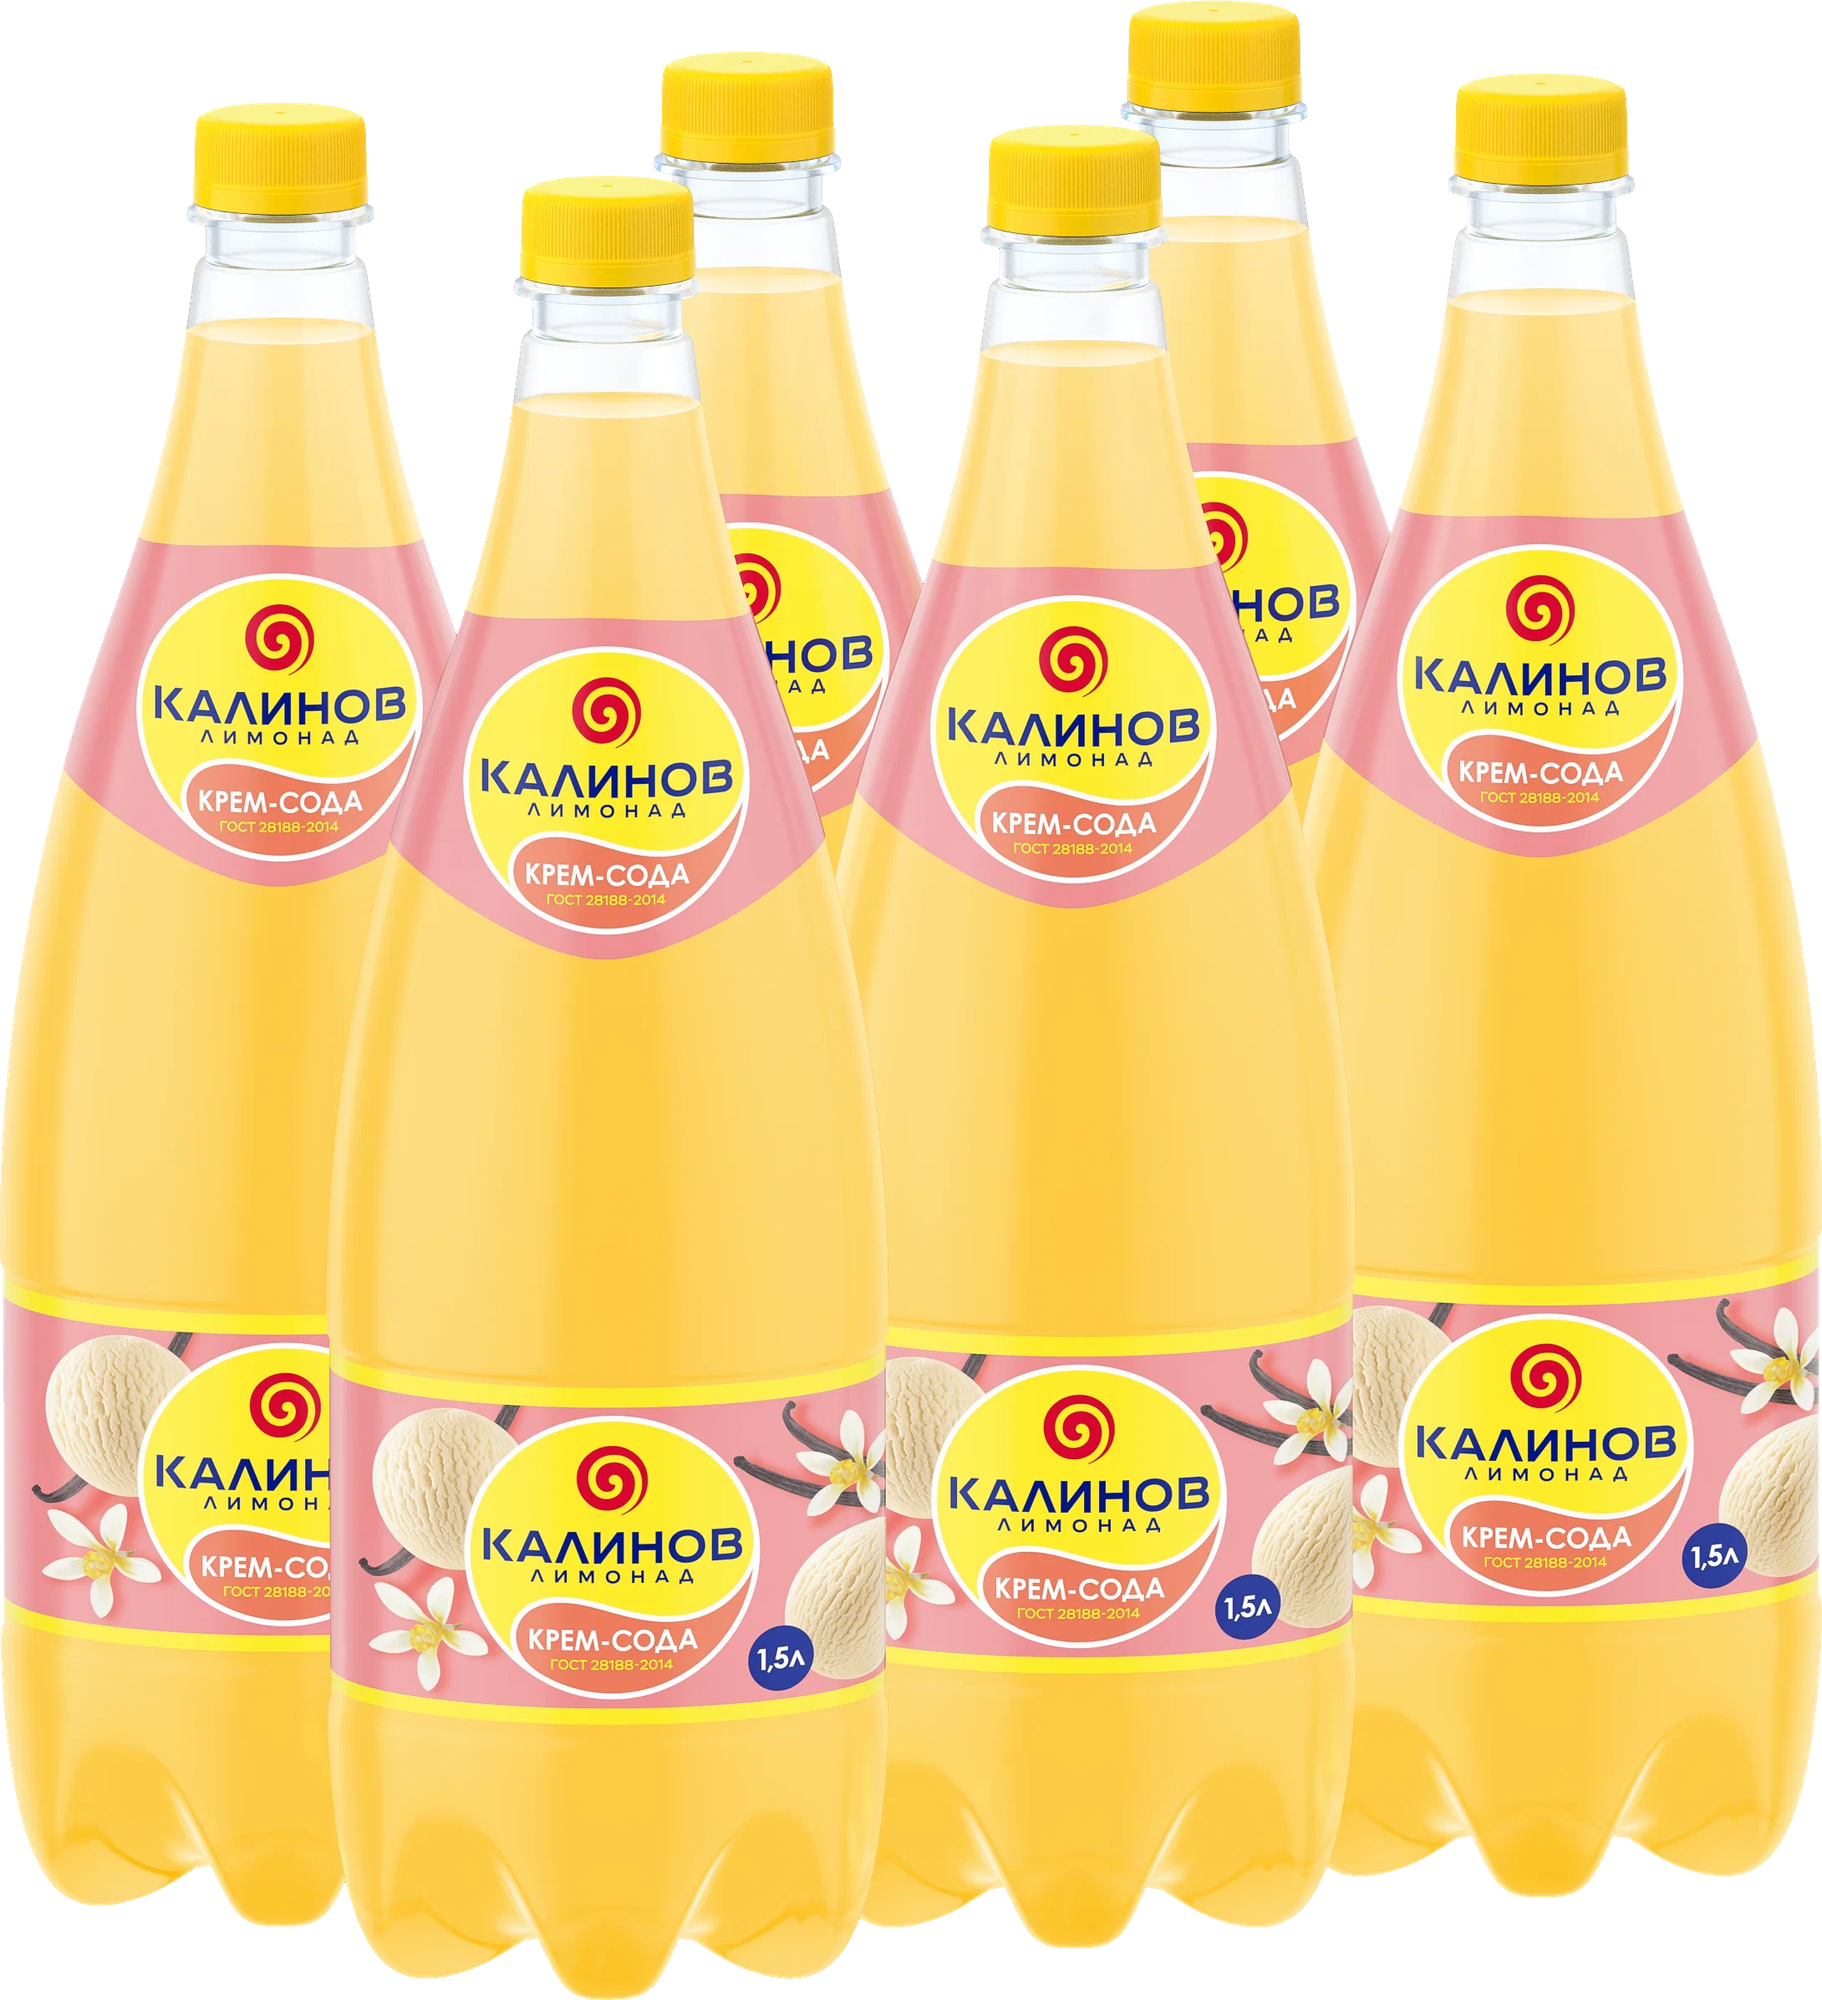 Лимонад Калинов Крем-Сода 1.5 л ПЭТ упаковка 6 штук